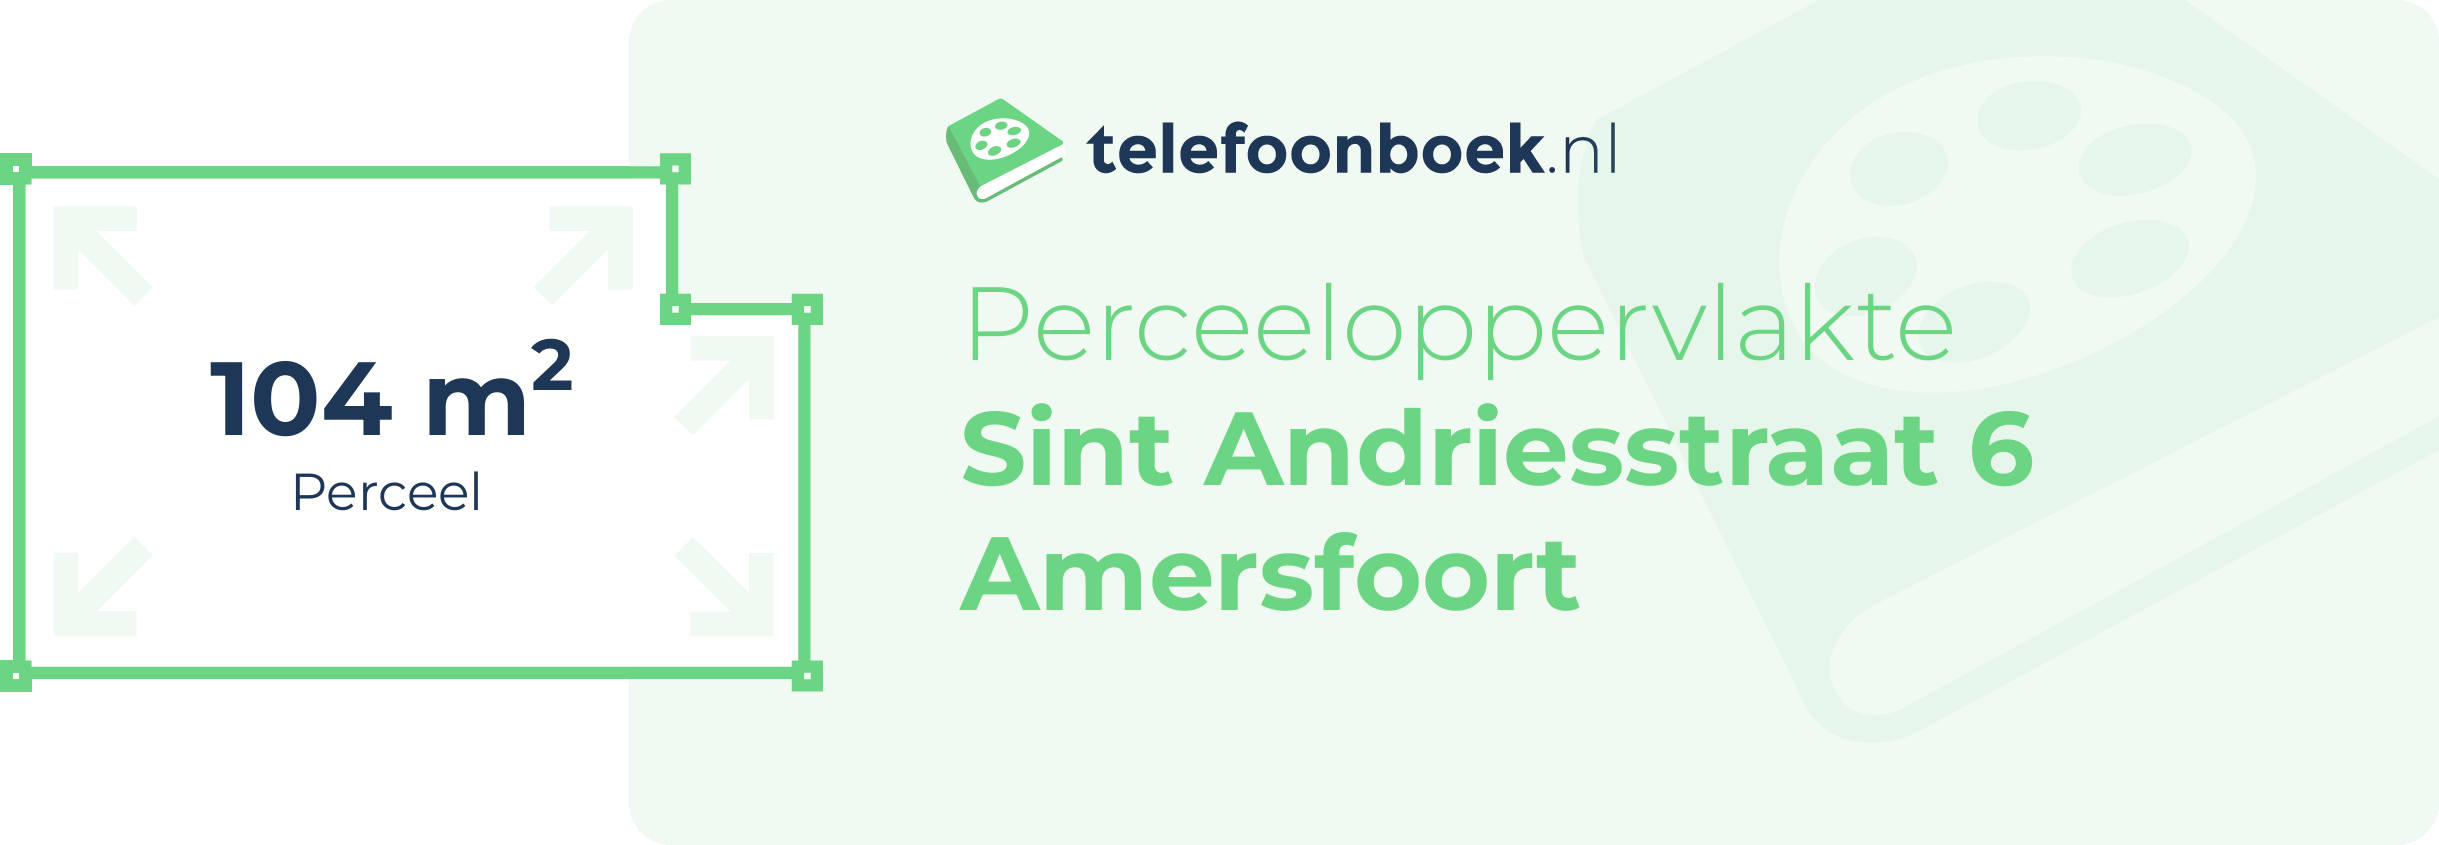 Perceeloppervlakte Sint Andriesstraat 6 Amersfoort